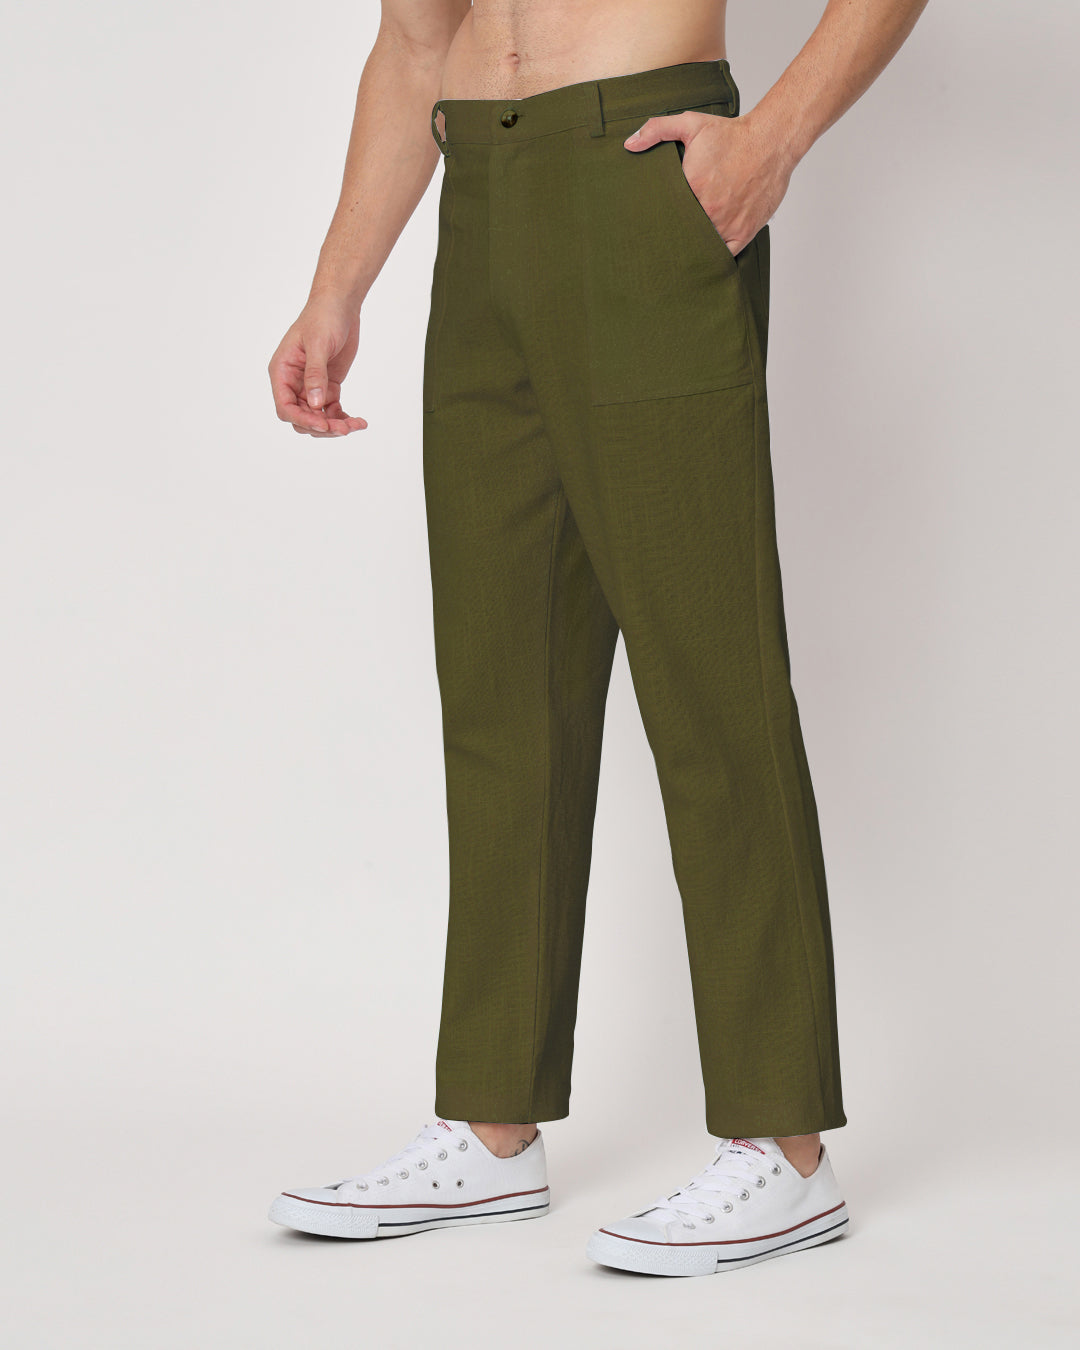 Combo : Comfy Ease Beige & Olive Green Men's Pants - Set of 2